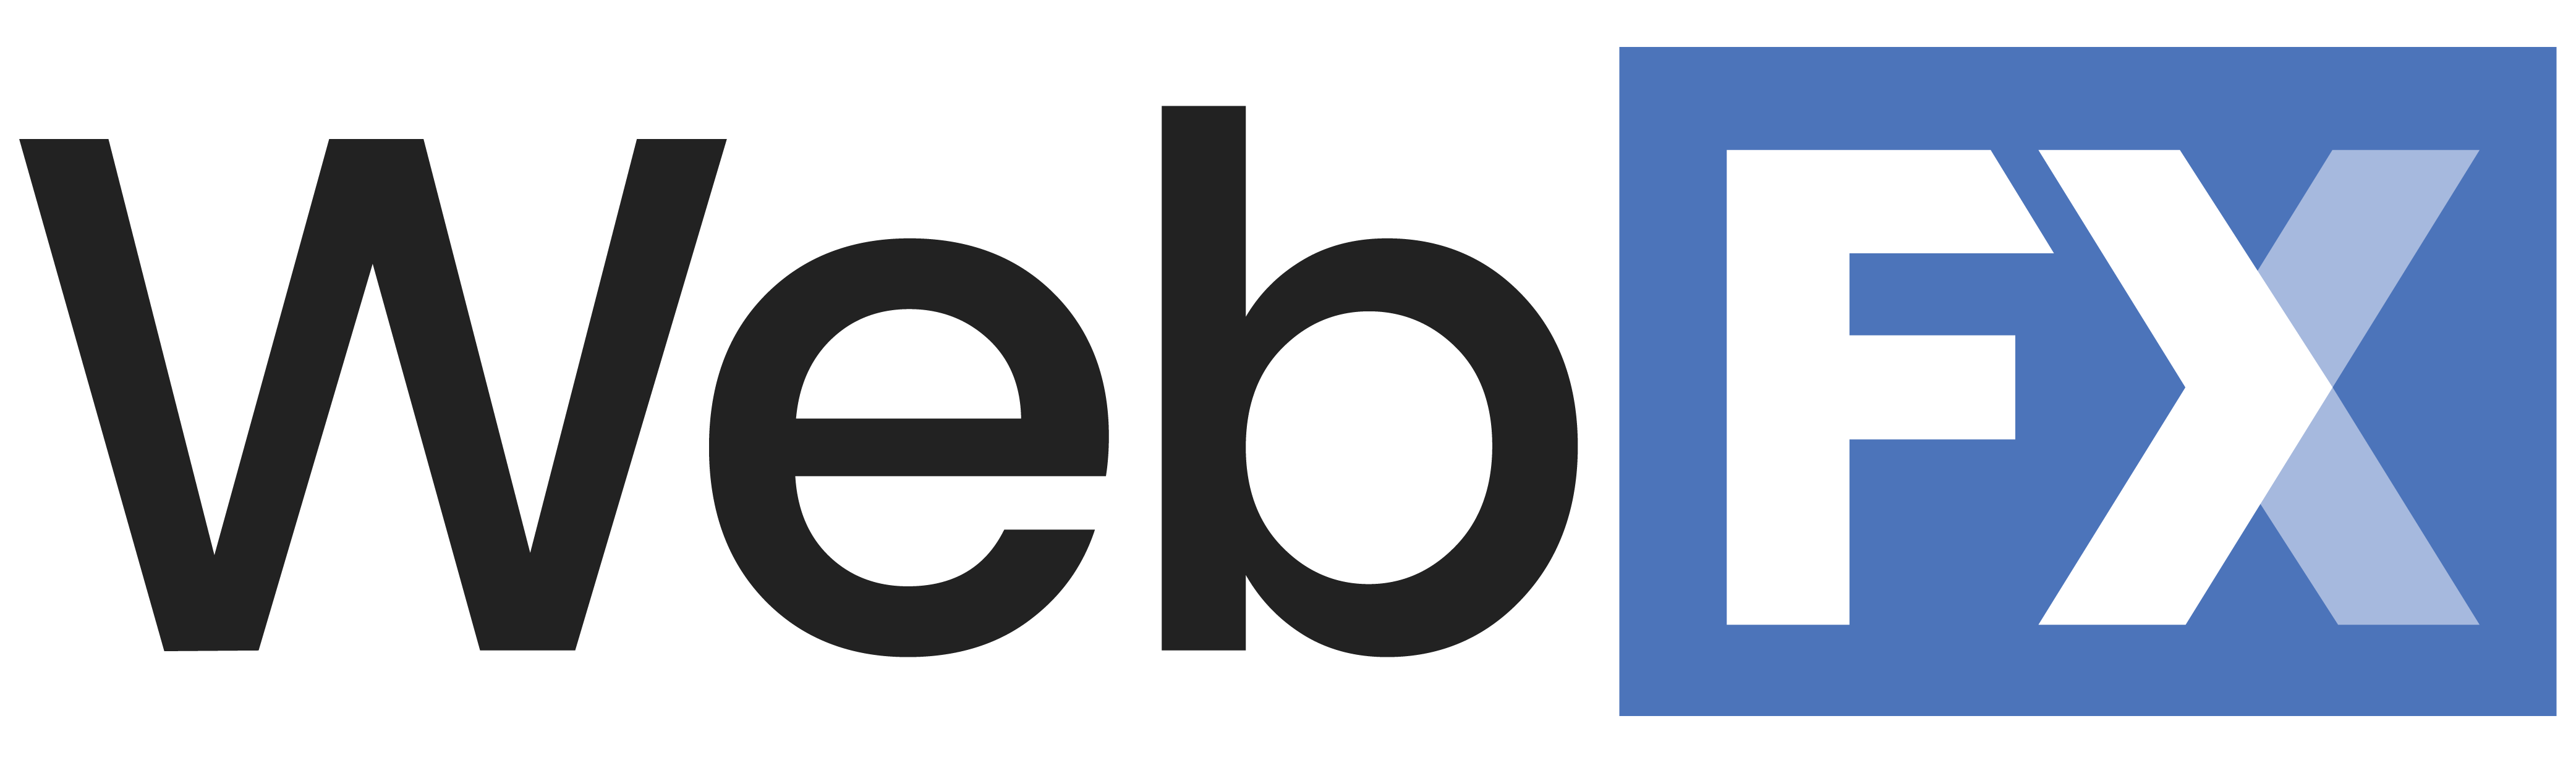 webfx.com company logo